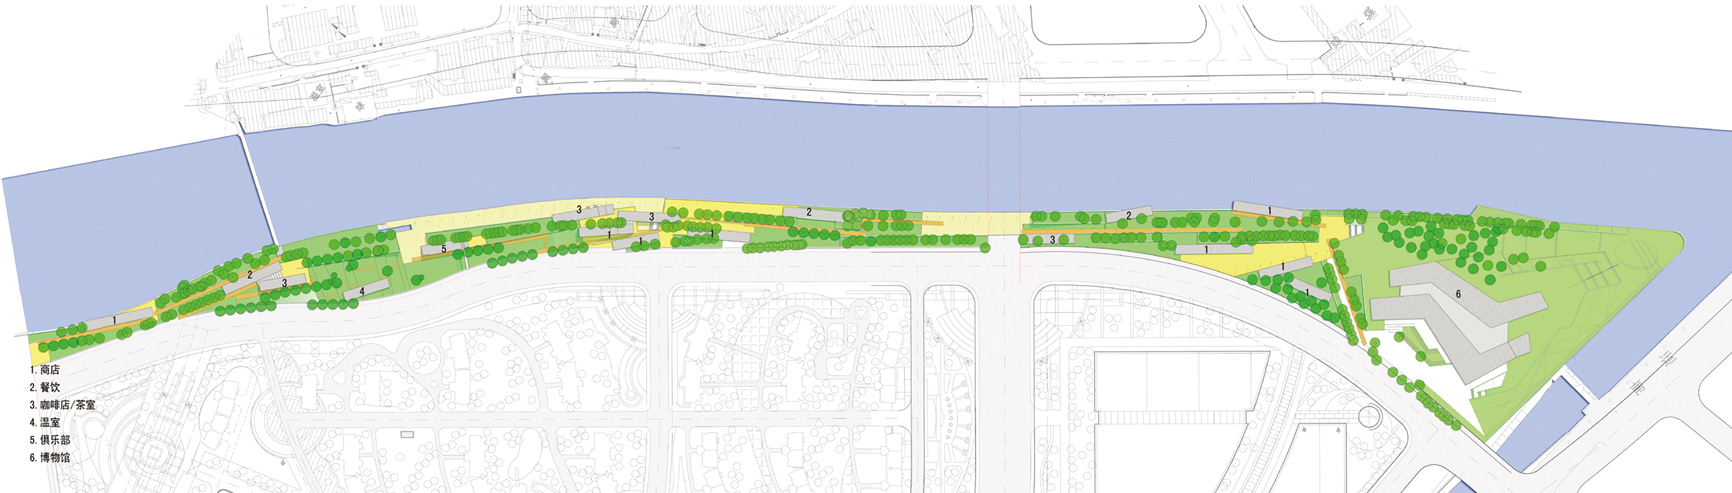 某滨水商业区绿化带景观设计方案